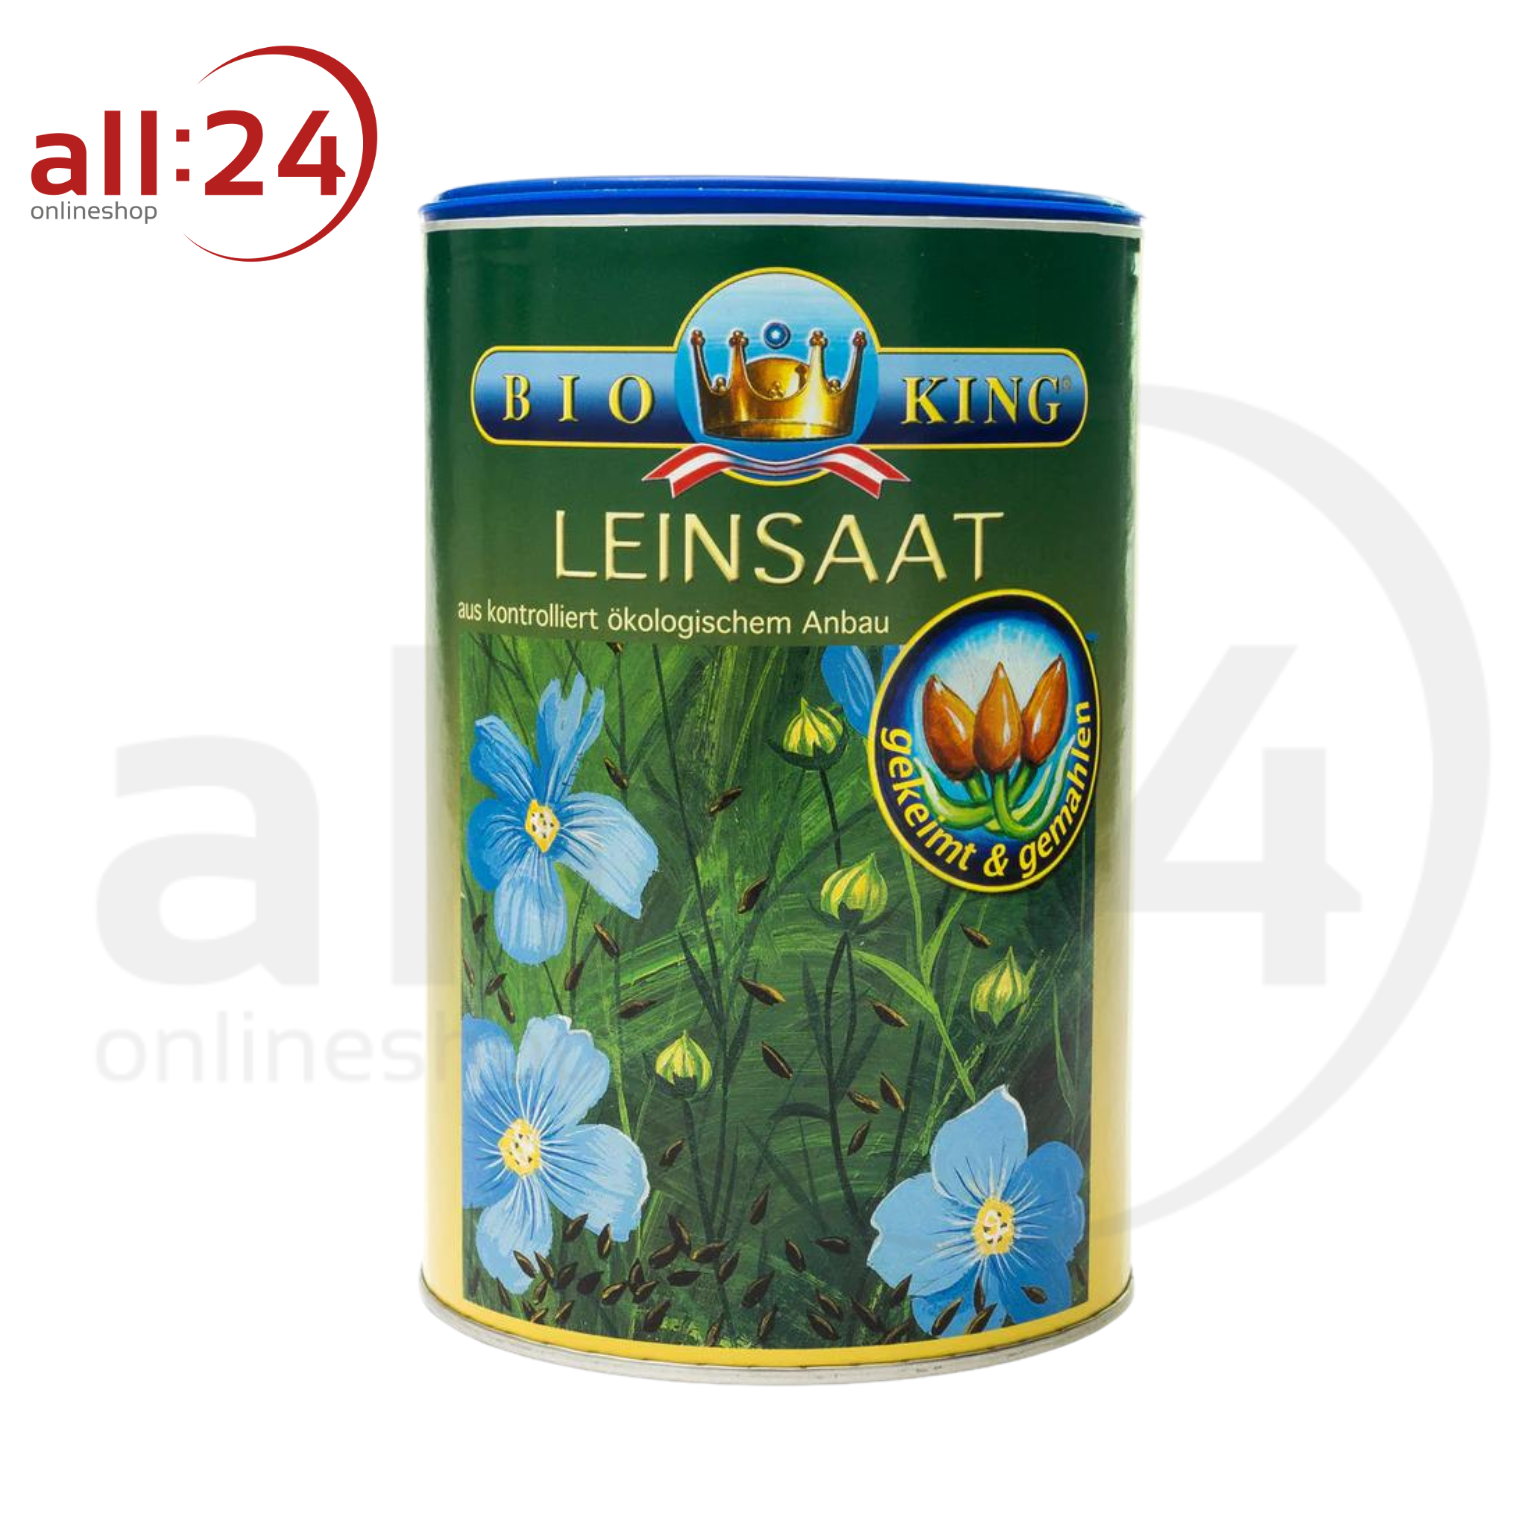 BioKing Bio Leinsaat Gekeimt & Gemahlen Vegan, 250g-450g 450 g